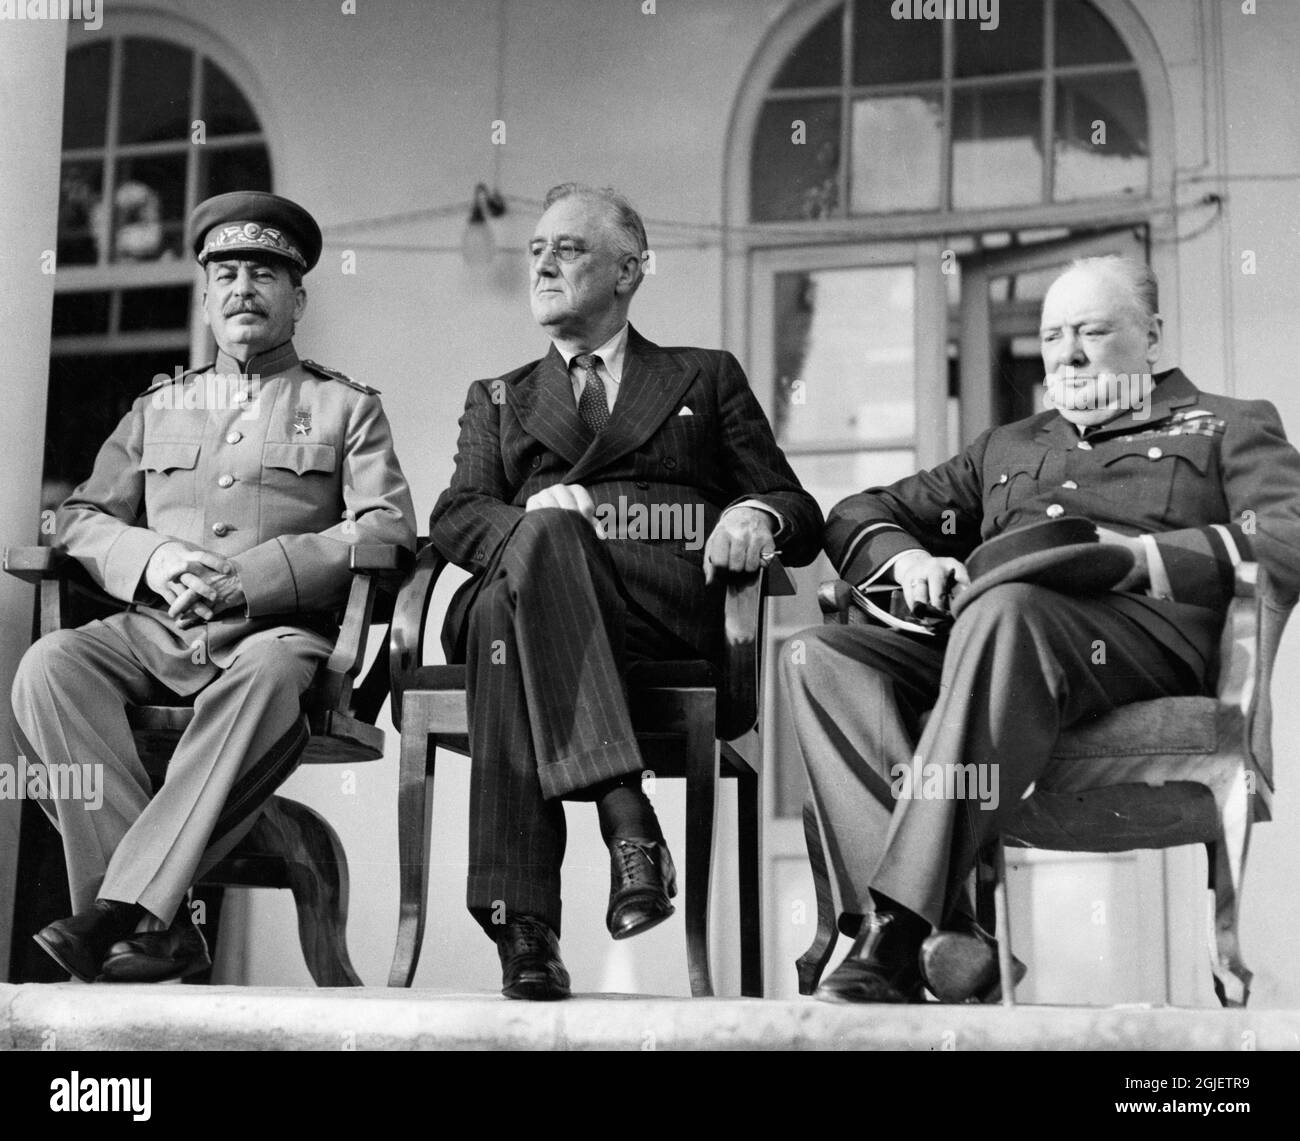 El primer ministro soviético Josef Stalin, el presidente estadounidense Franklin D Roosevelt y el primer ministro británico Winston Churchill, se reúnen en la Conferencia de Teherán de los 'Tres Grandes' en noviembre/diciembre de 1943 Foto de stock